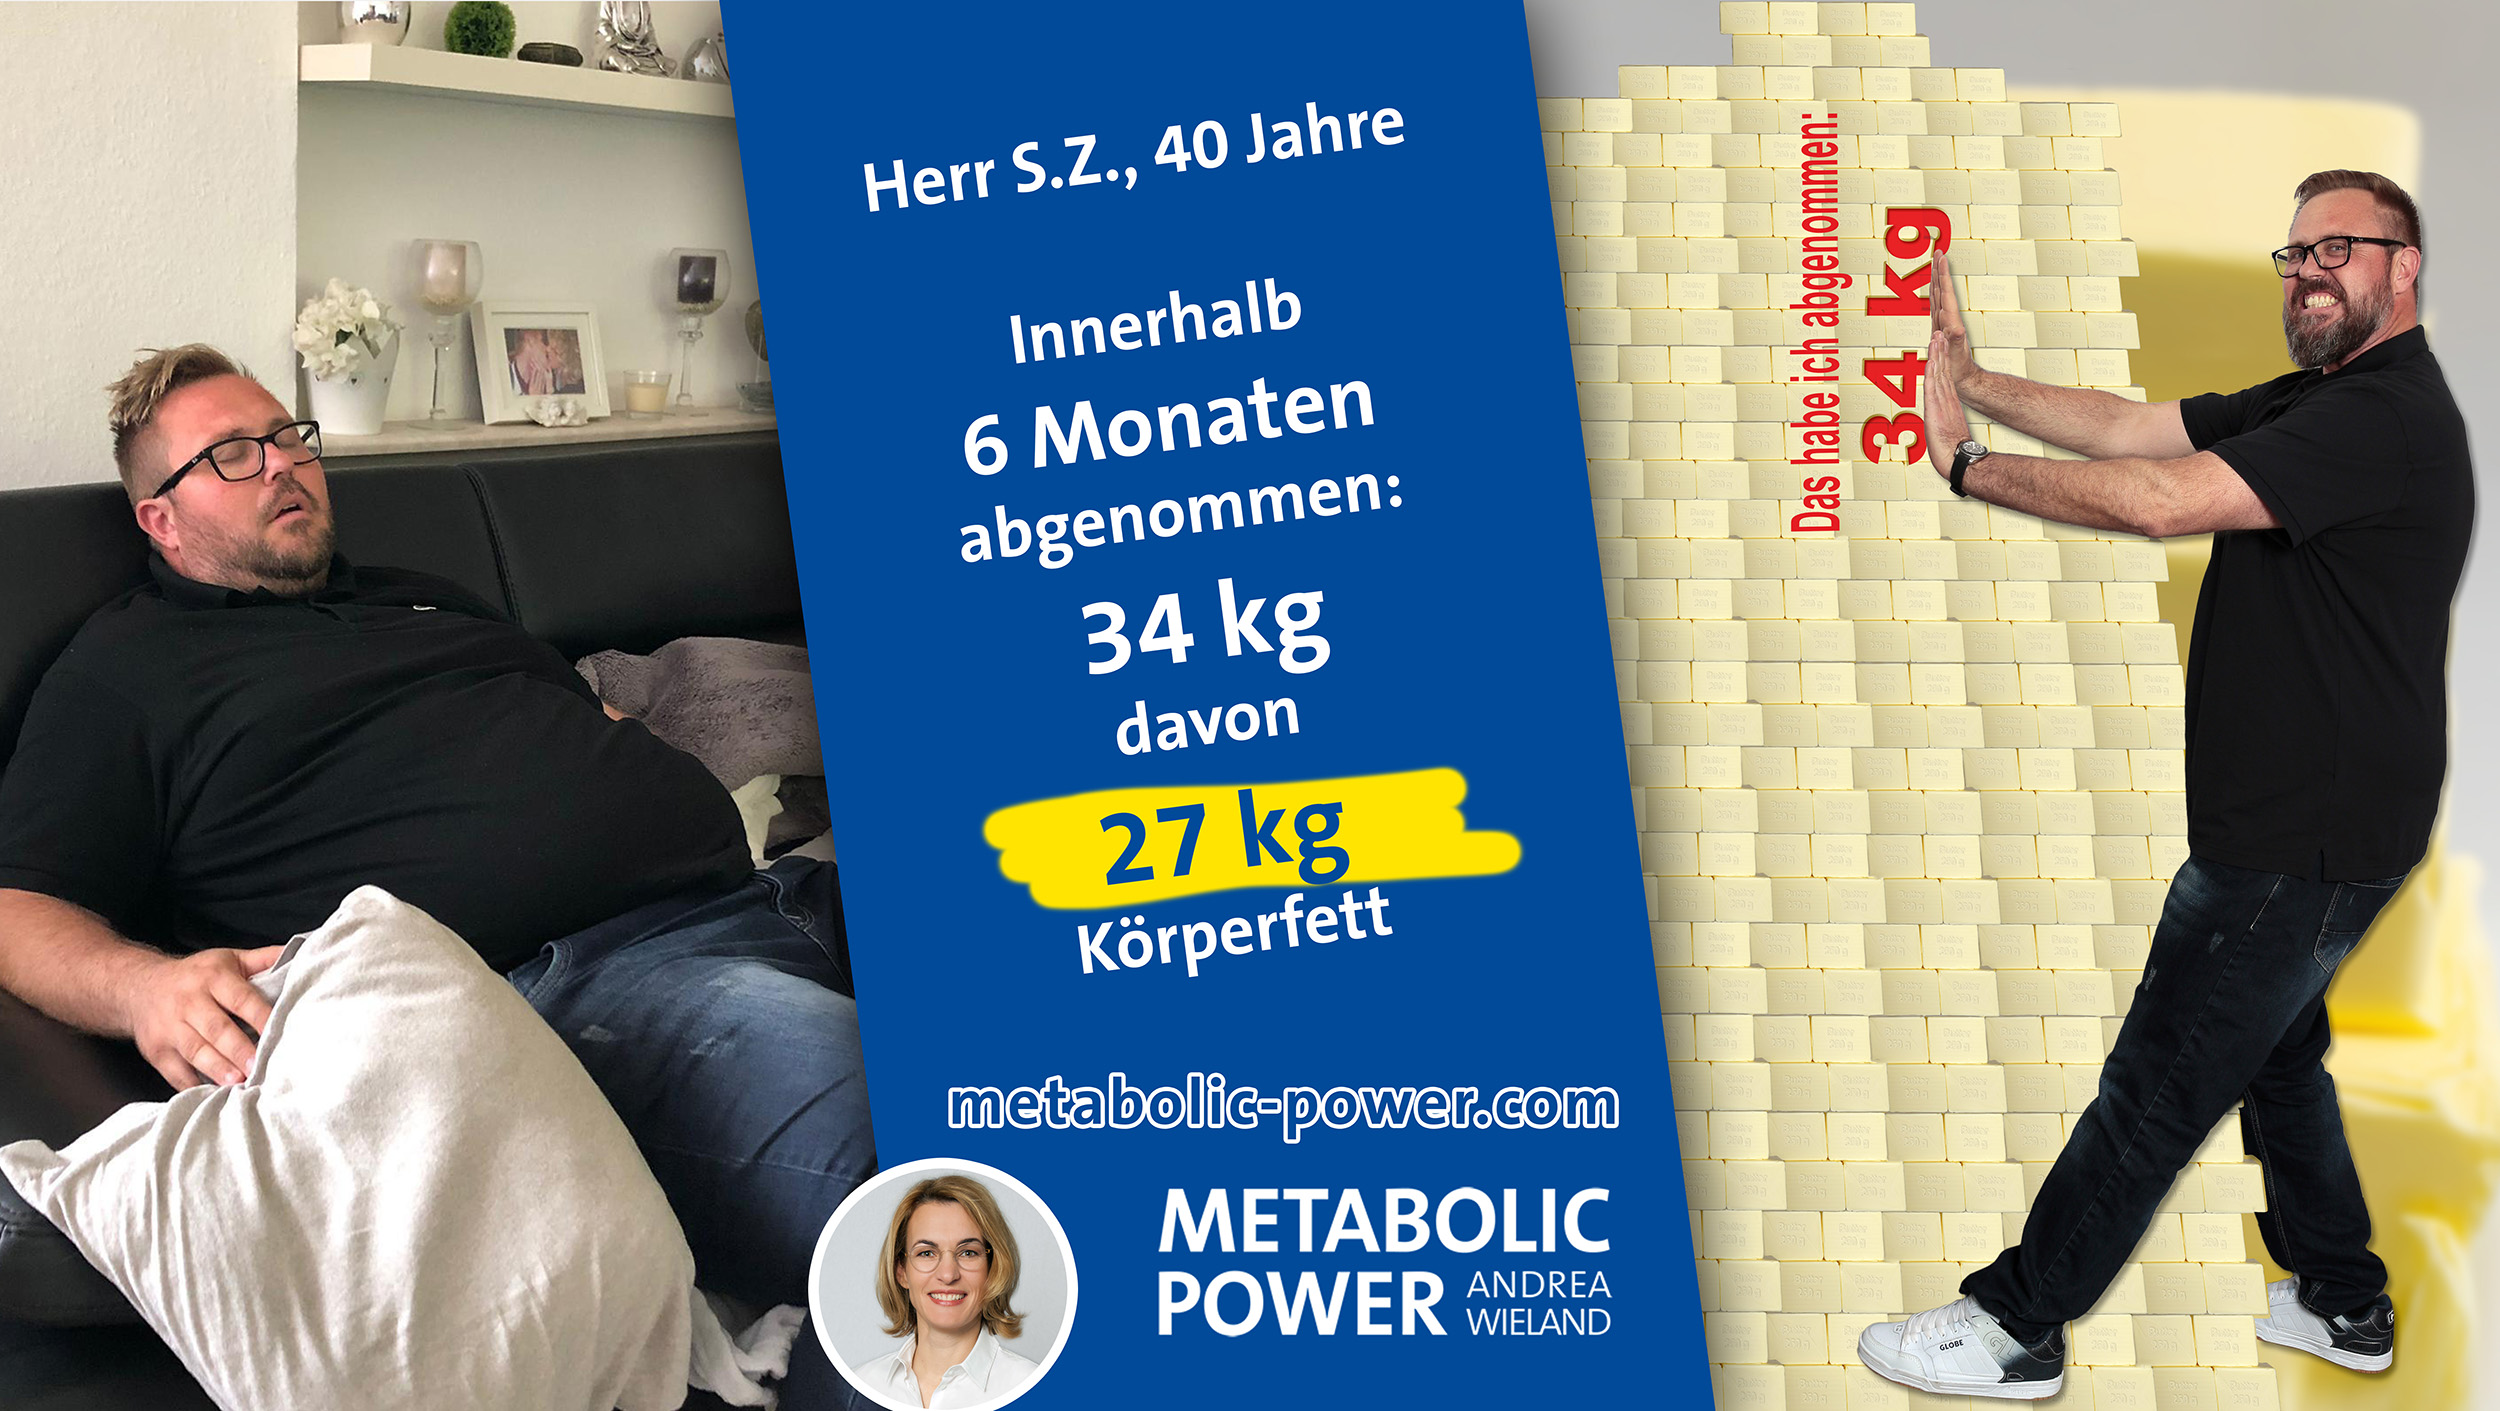 Andrea Wieland Metabolic Power Abnehmen aber sicher - S. Z. 34 kg in 6 Monaten abgenommen